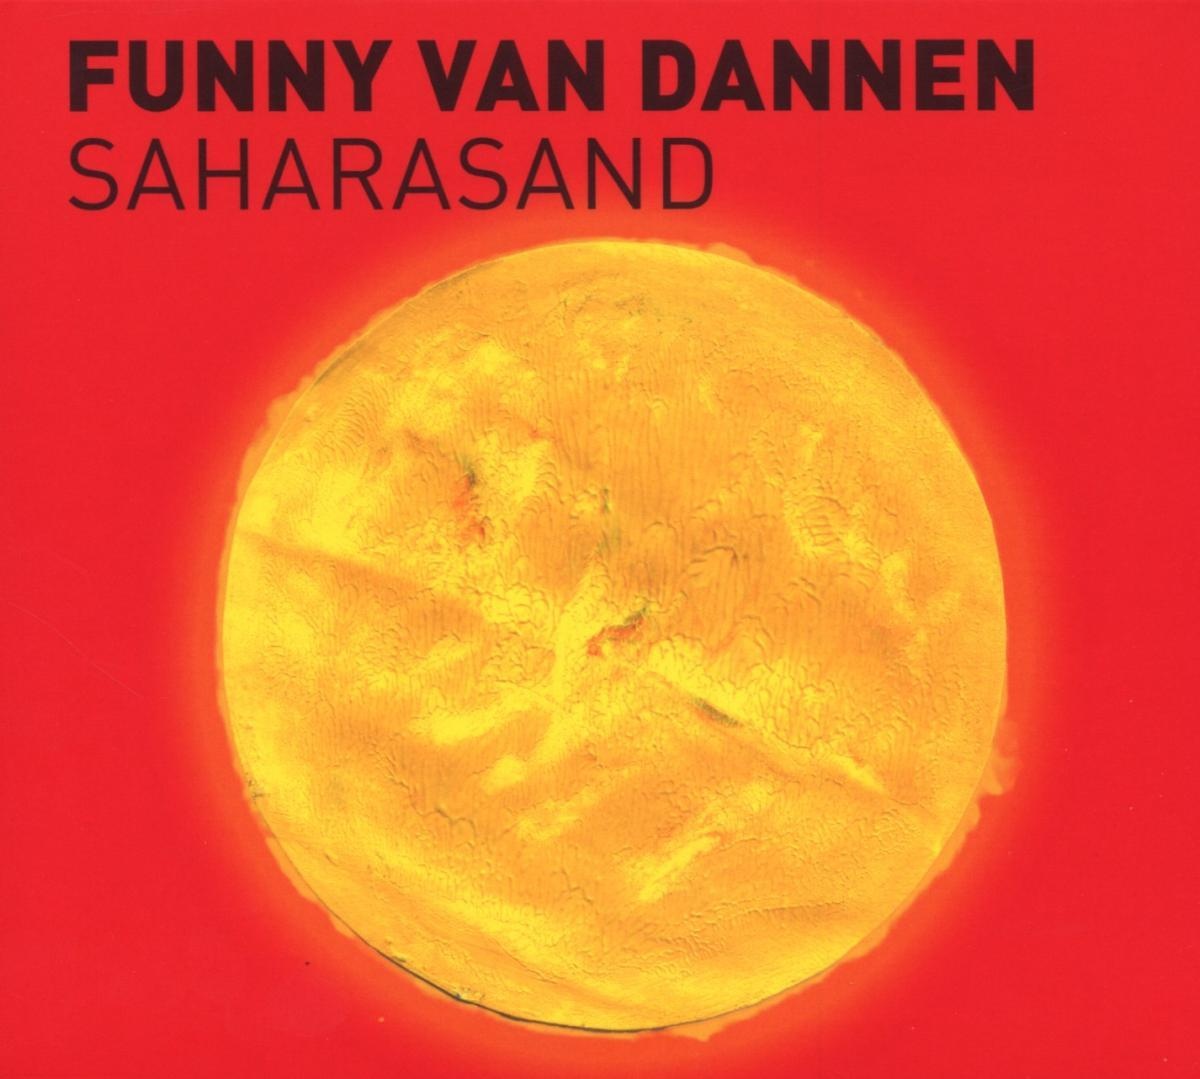 Saharasand - Funny van Dannen. (CD)